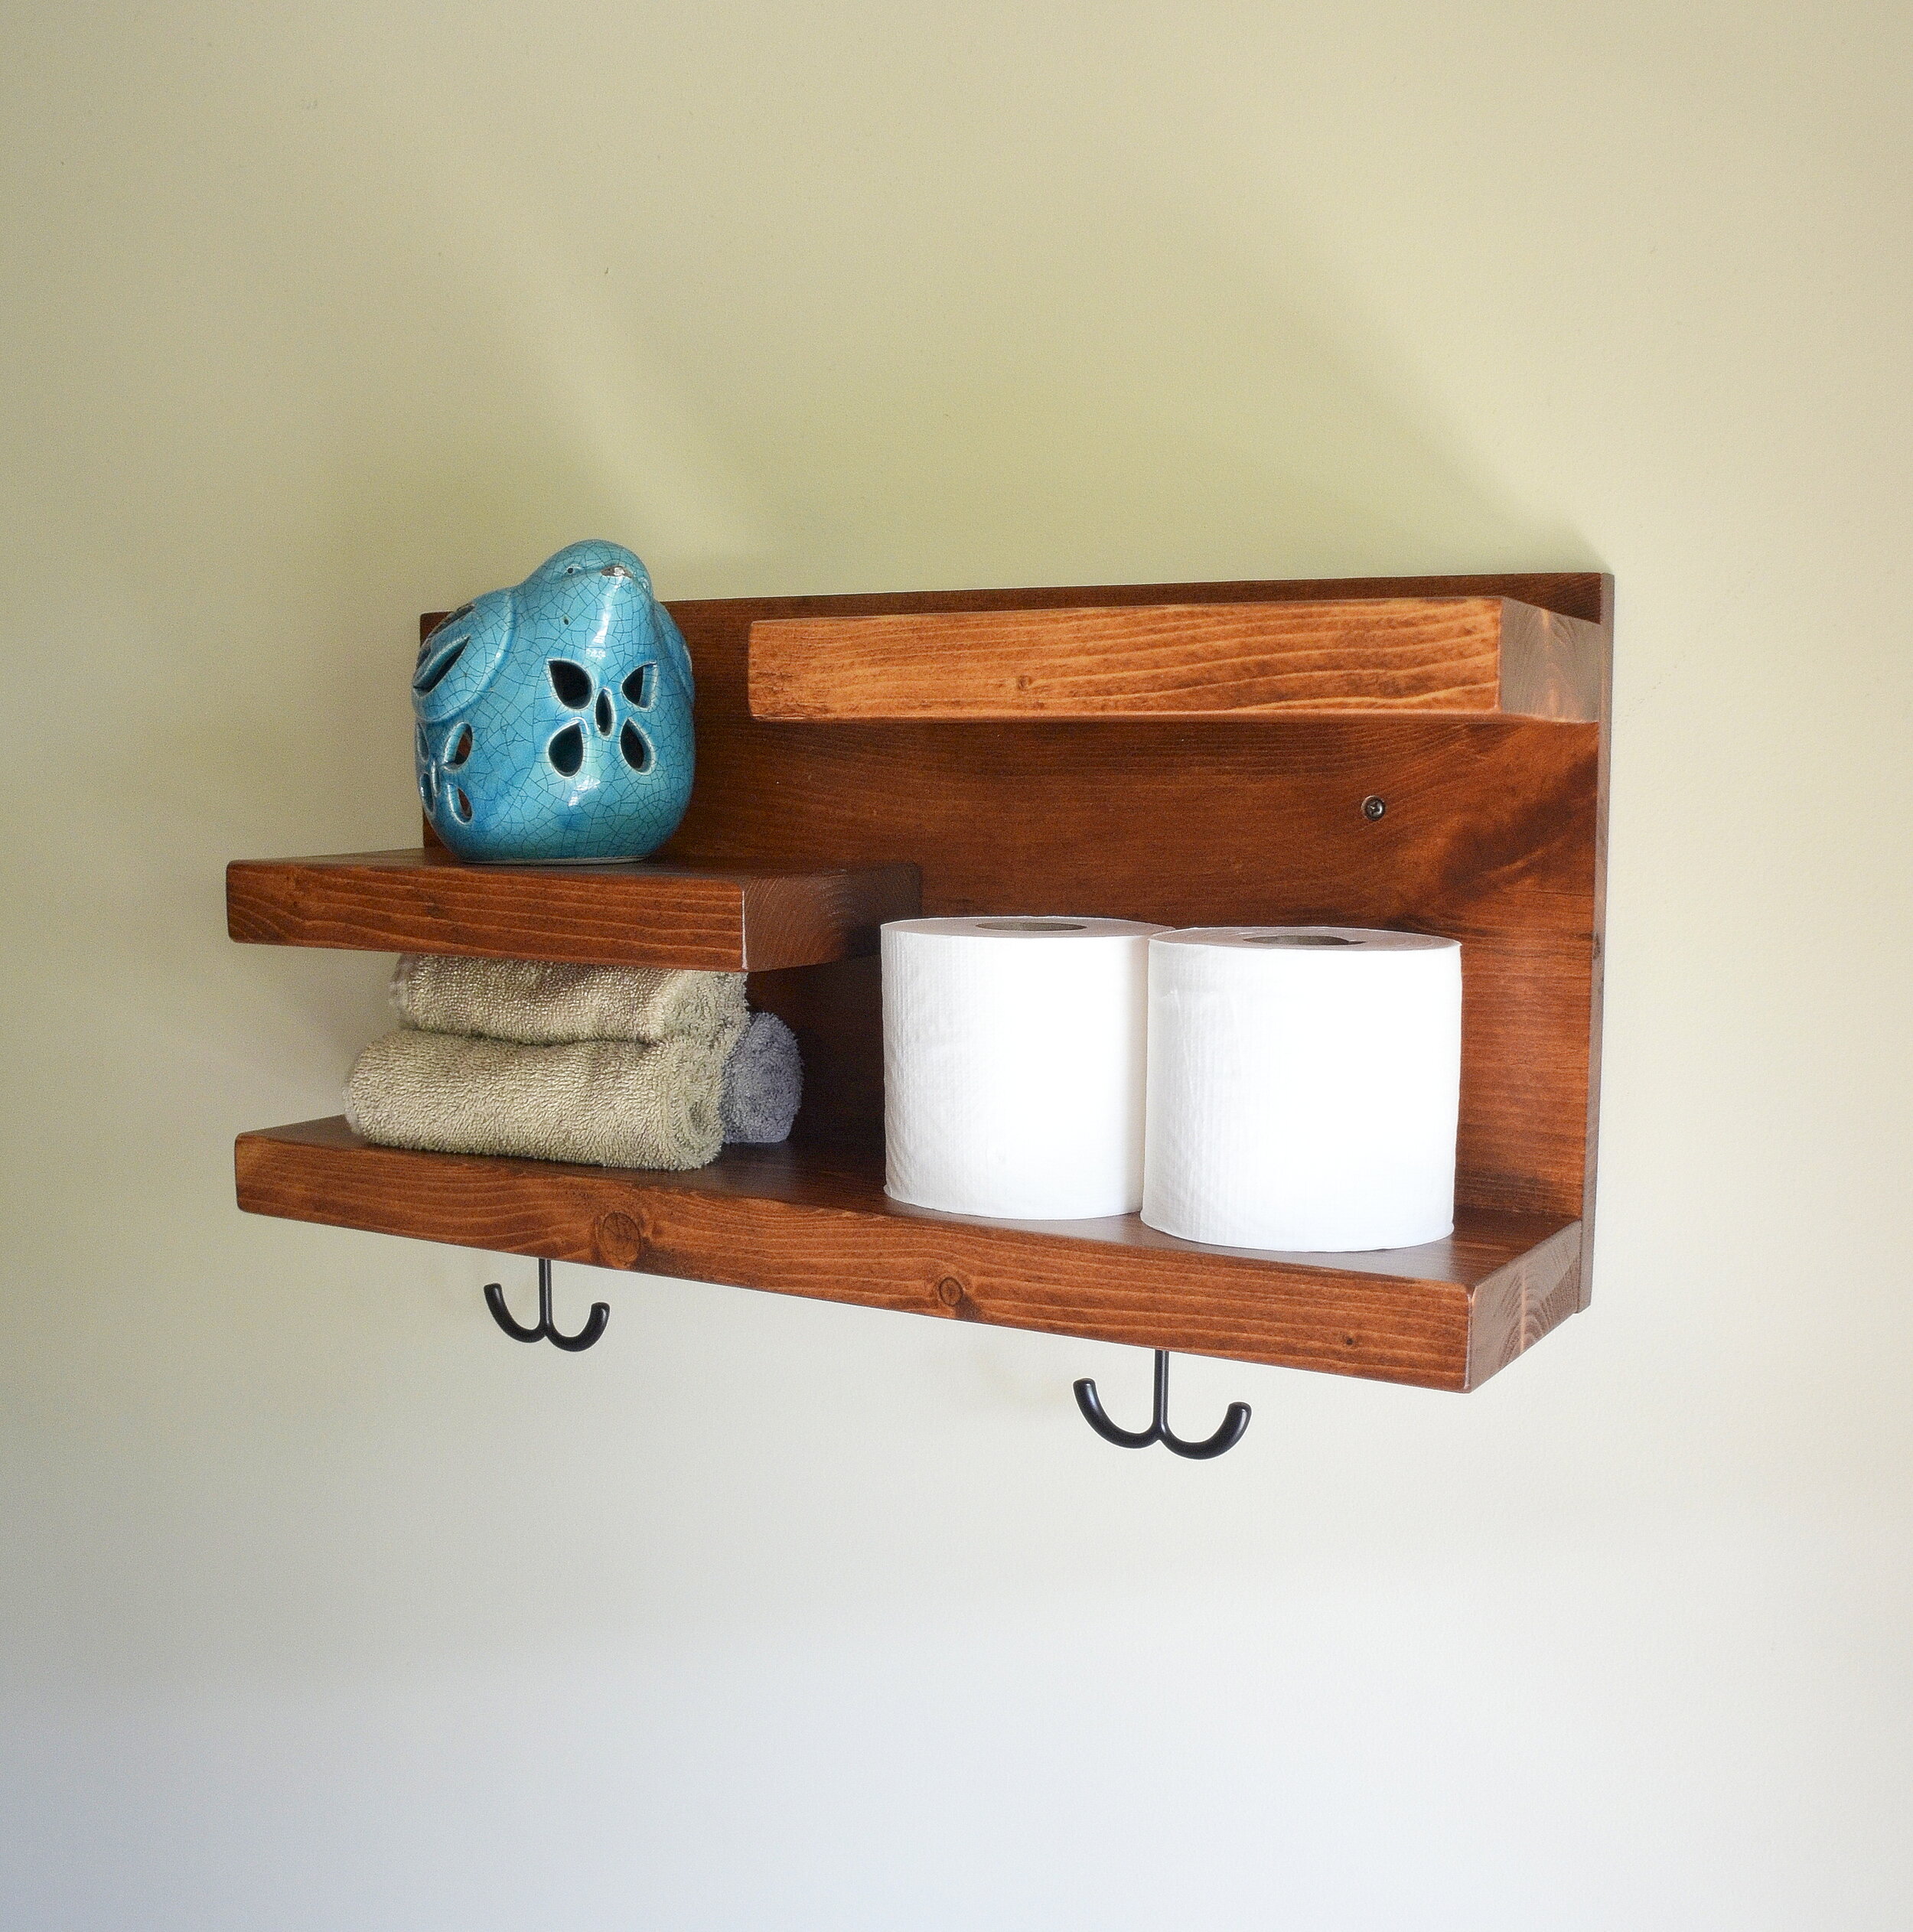 Wood Bathroom Entryway Shelf with Hooks Organizer Solid Wood Multi